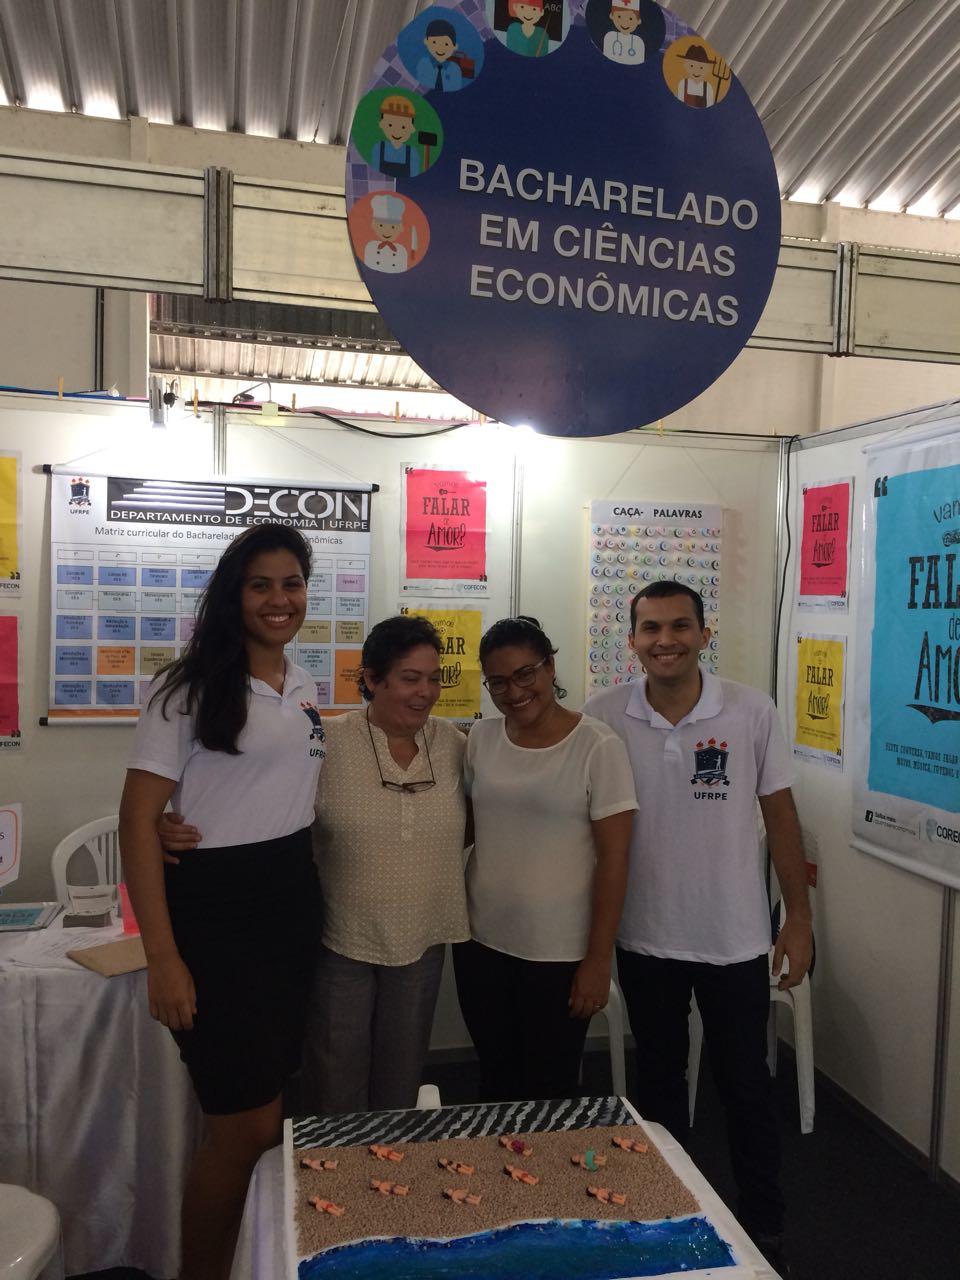 Profªs Isabel Oliveira e Eliane Abreu e monitores recepcionam visitantes no stand do DECON